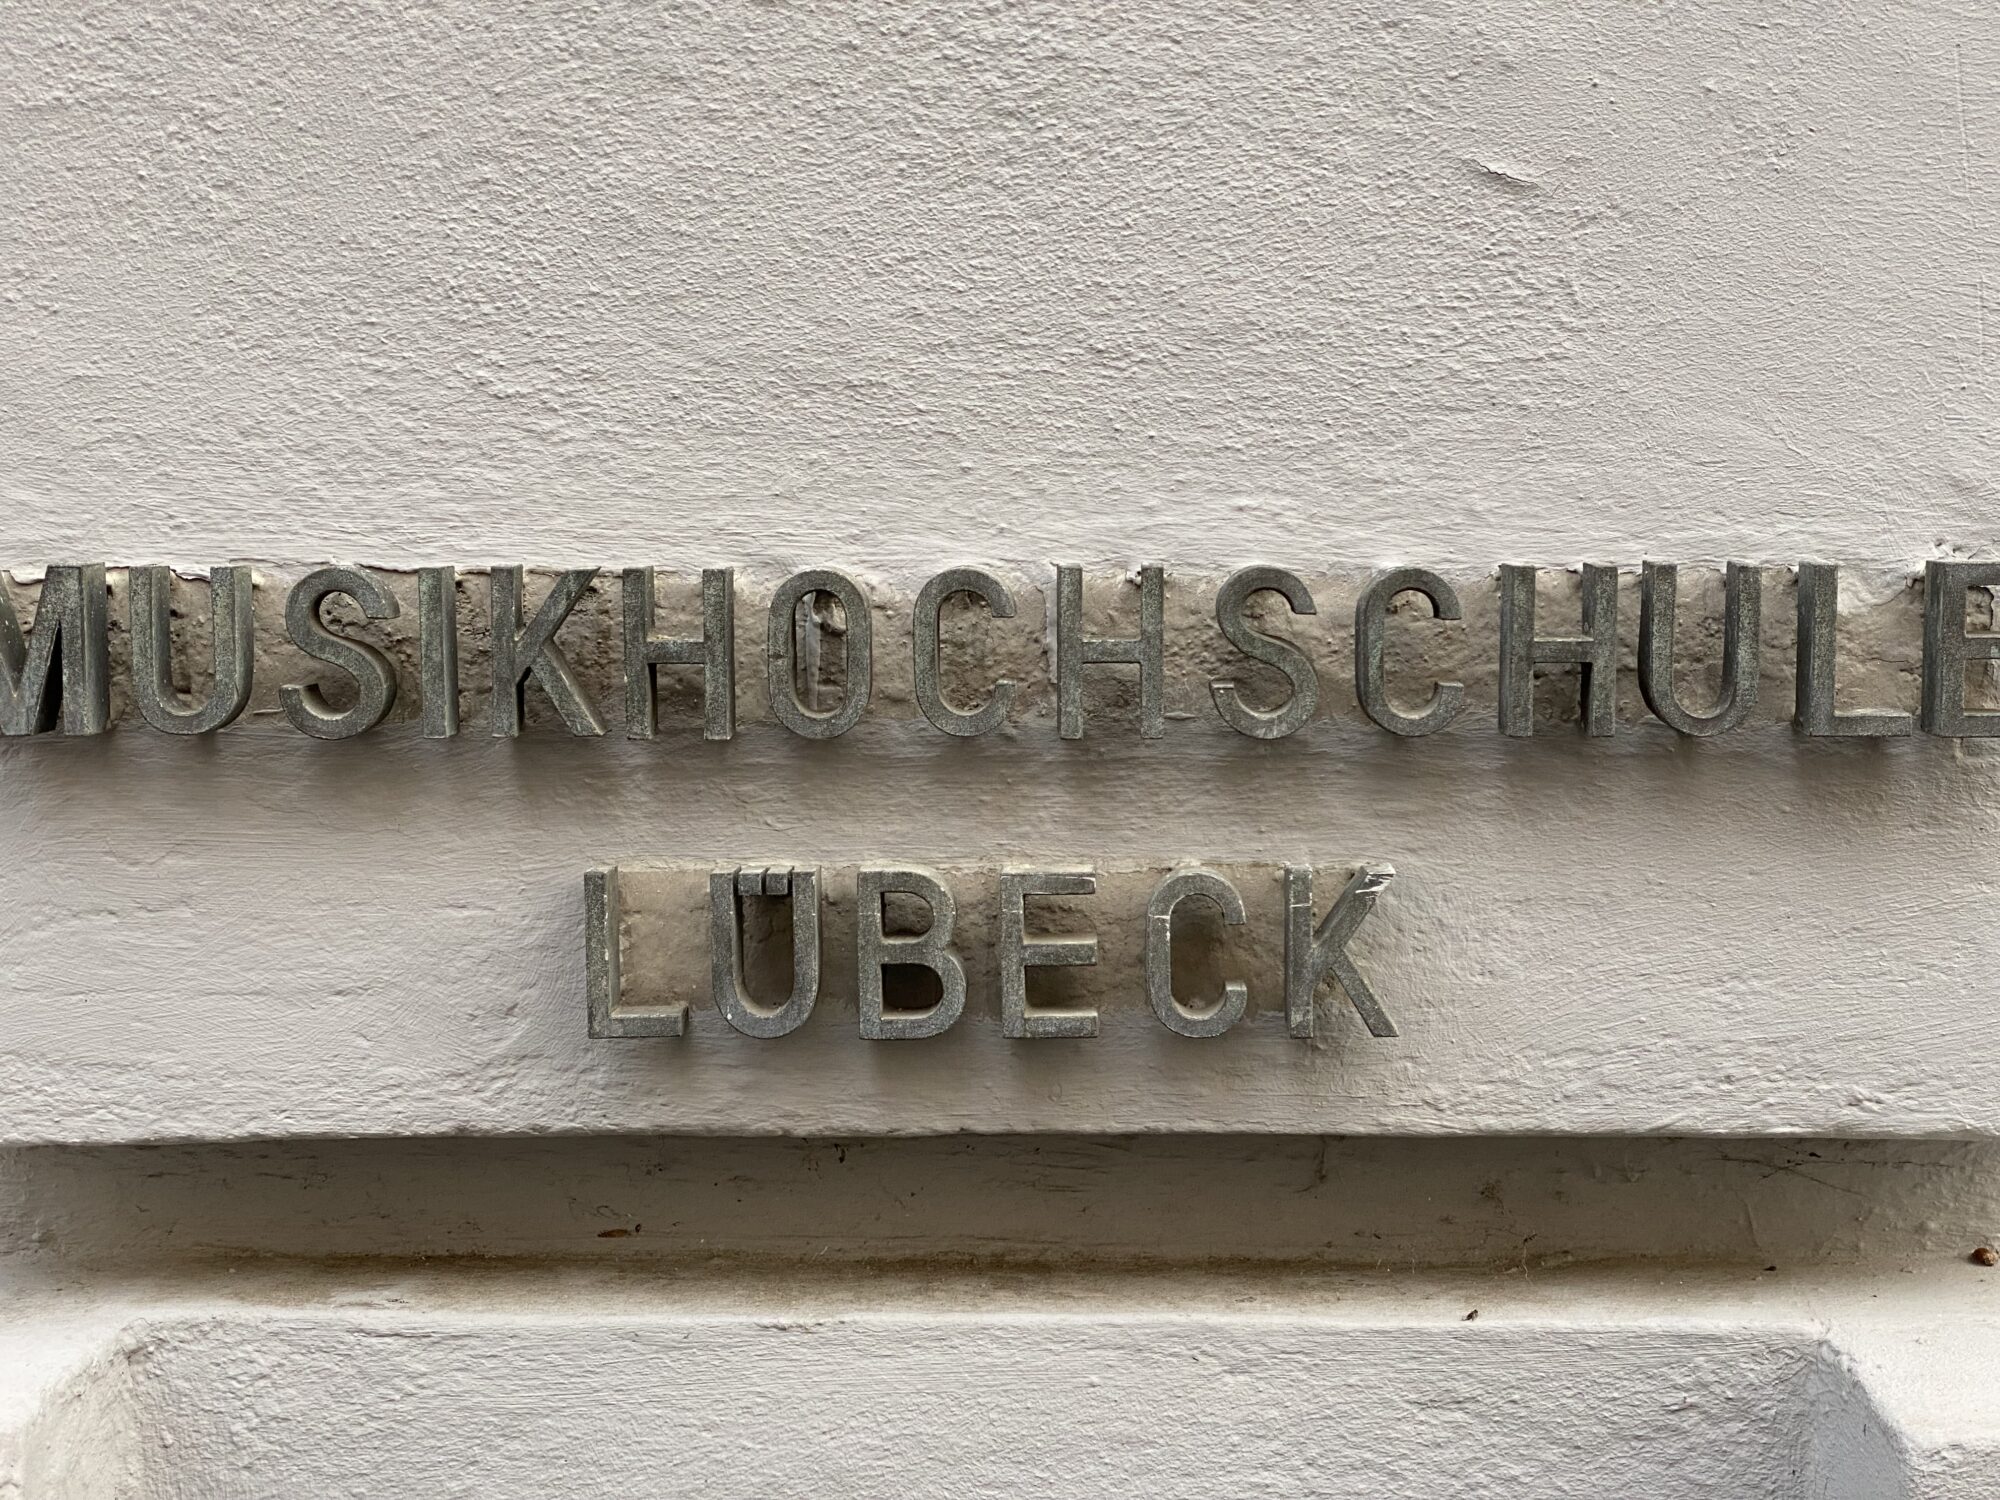 Die Petersgrube in Lübeck